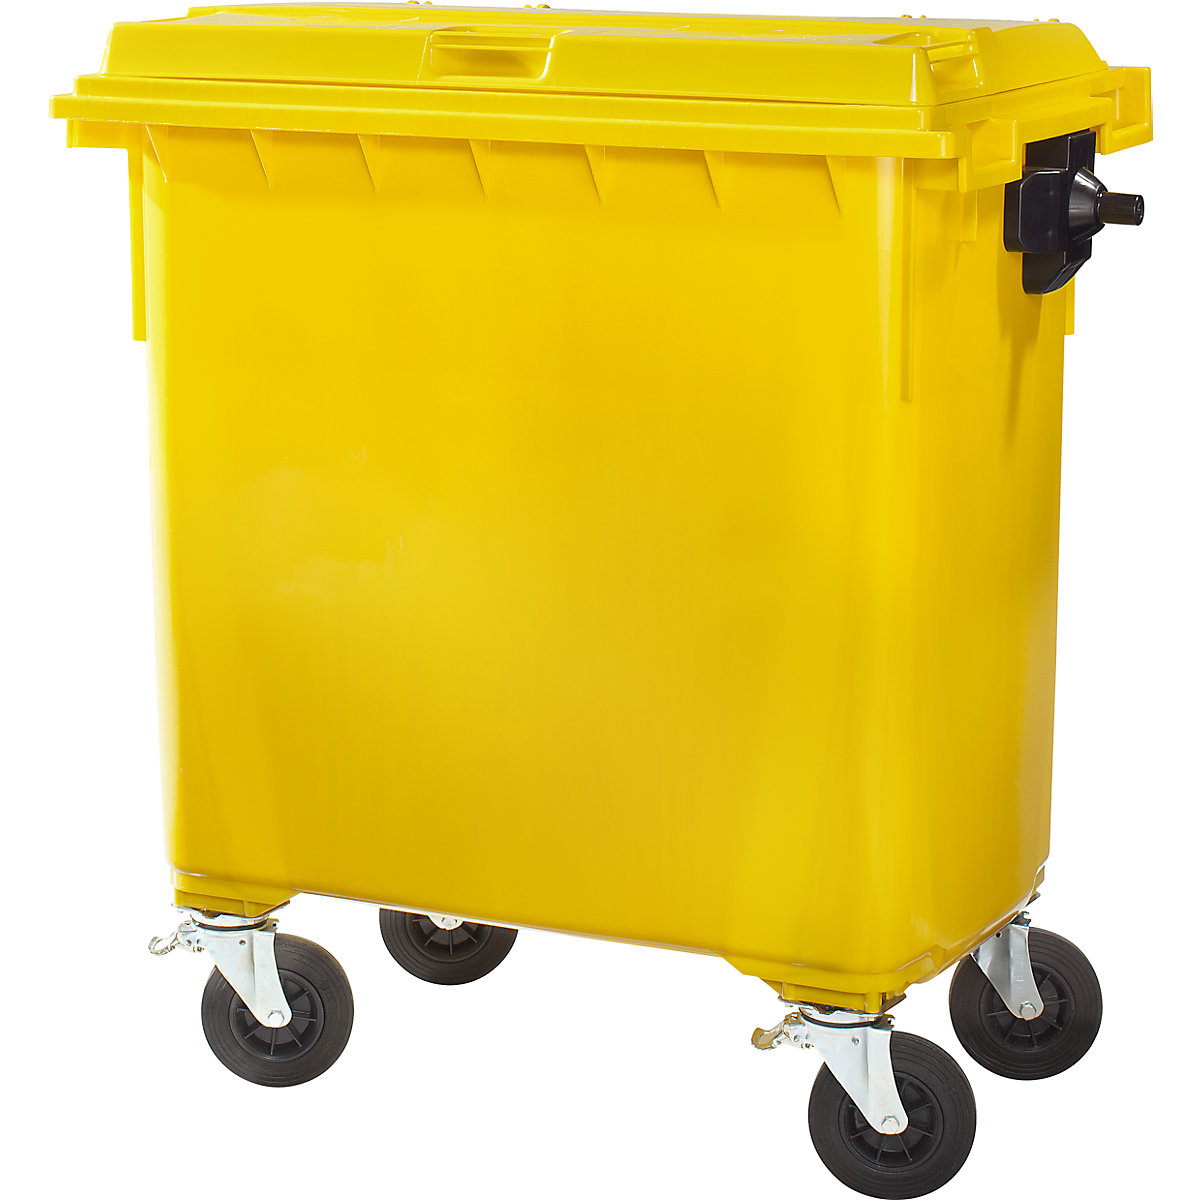 Conteneur à ordures en plastique conforme DIN EN 840, capacité 660 l, l x h x p 1360 x 1235 x 765 mm, jaune